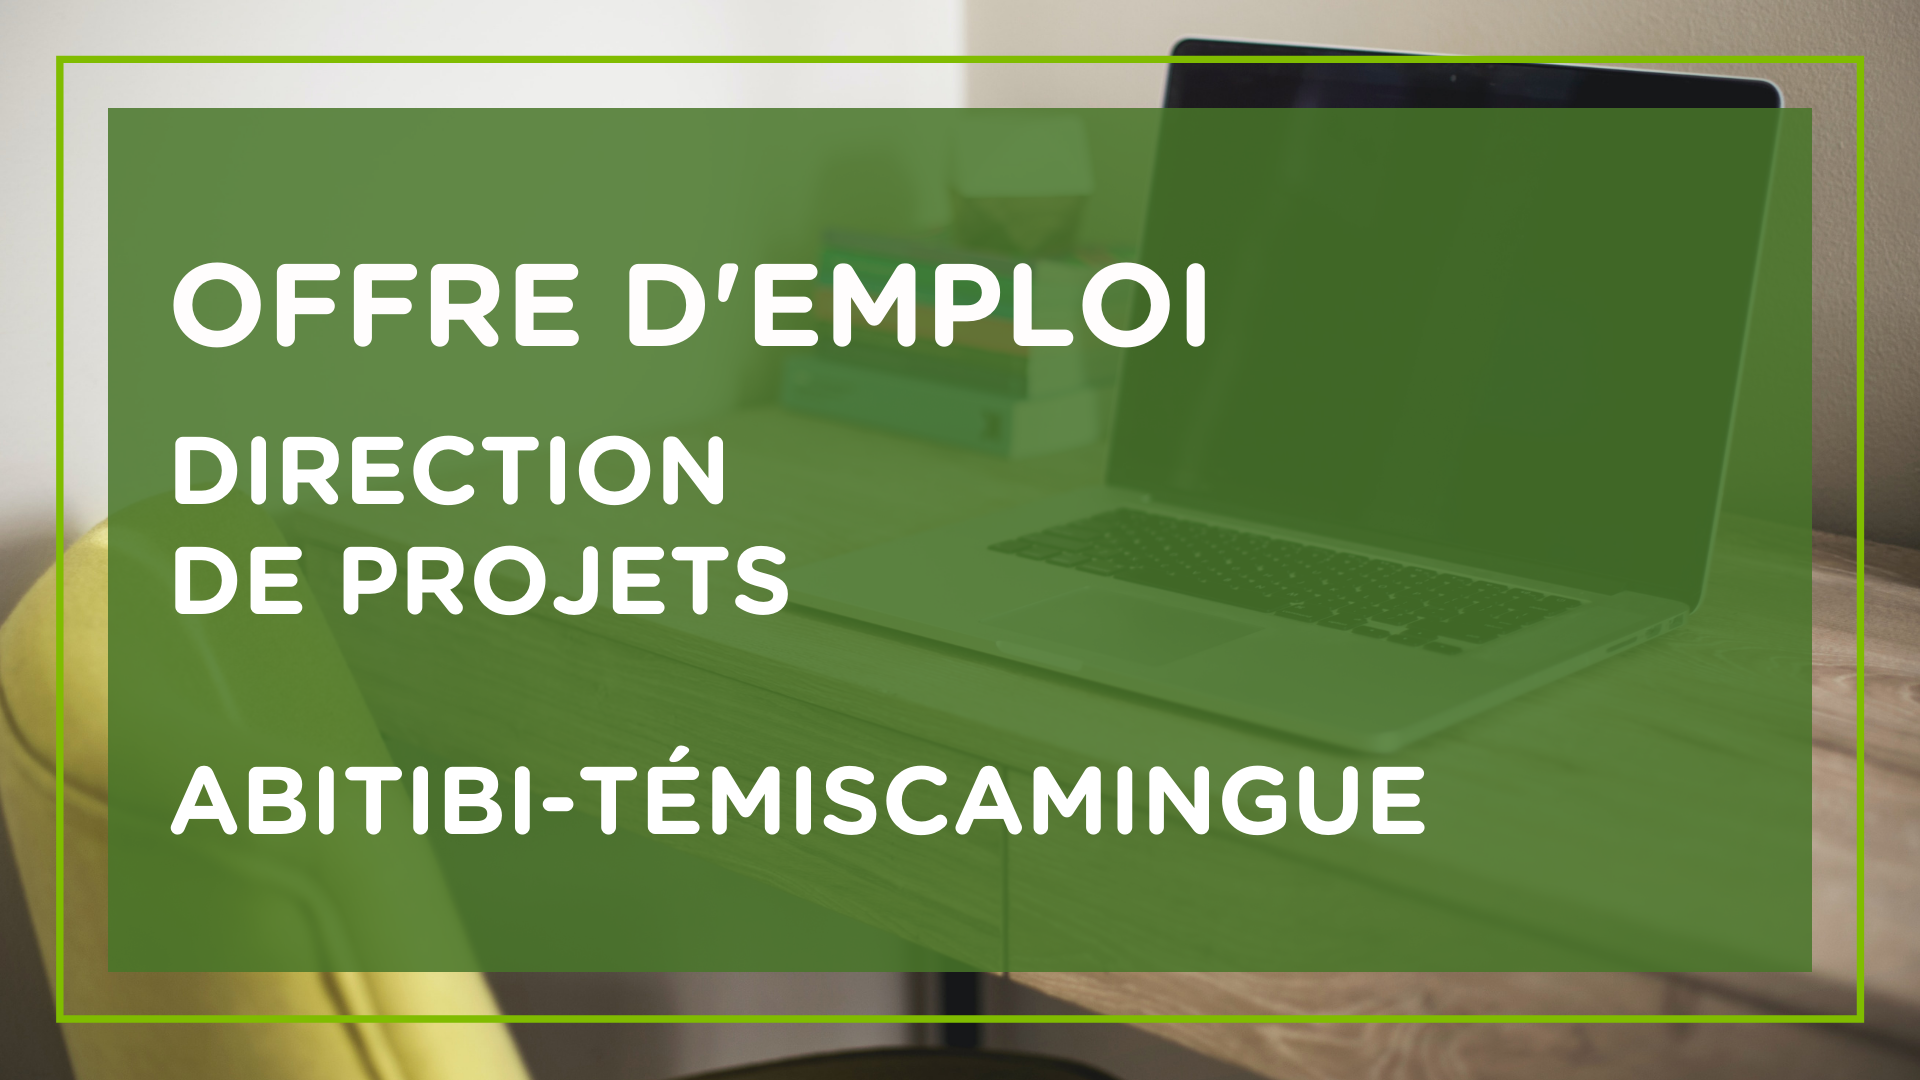 Emploi Direction de projets en Abitibi-Témiscamingue